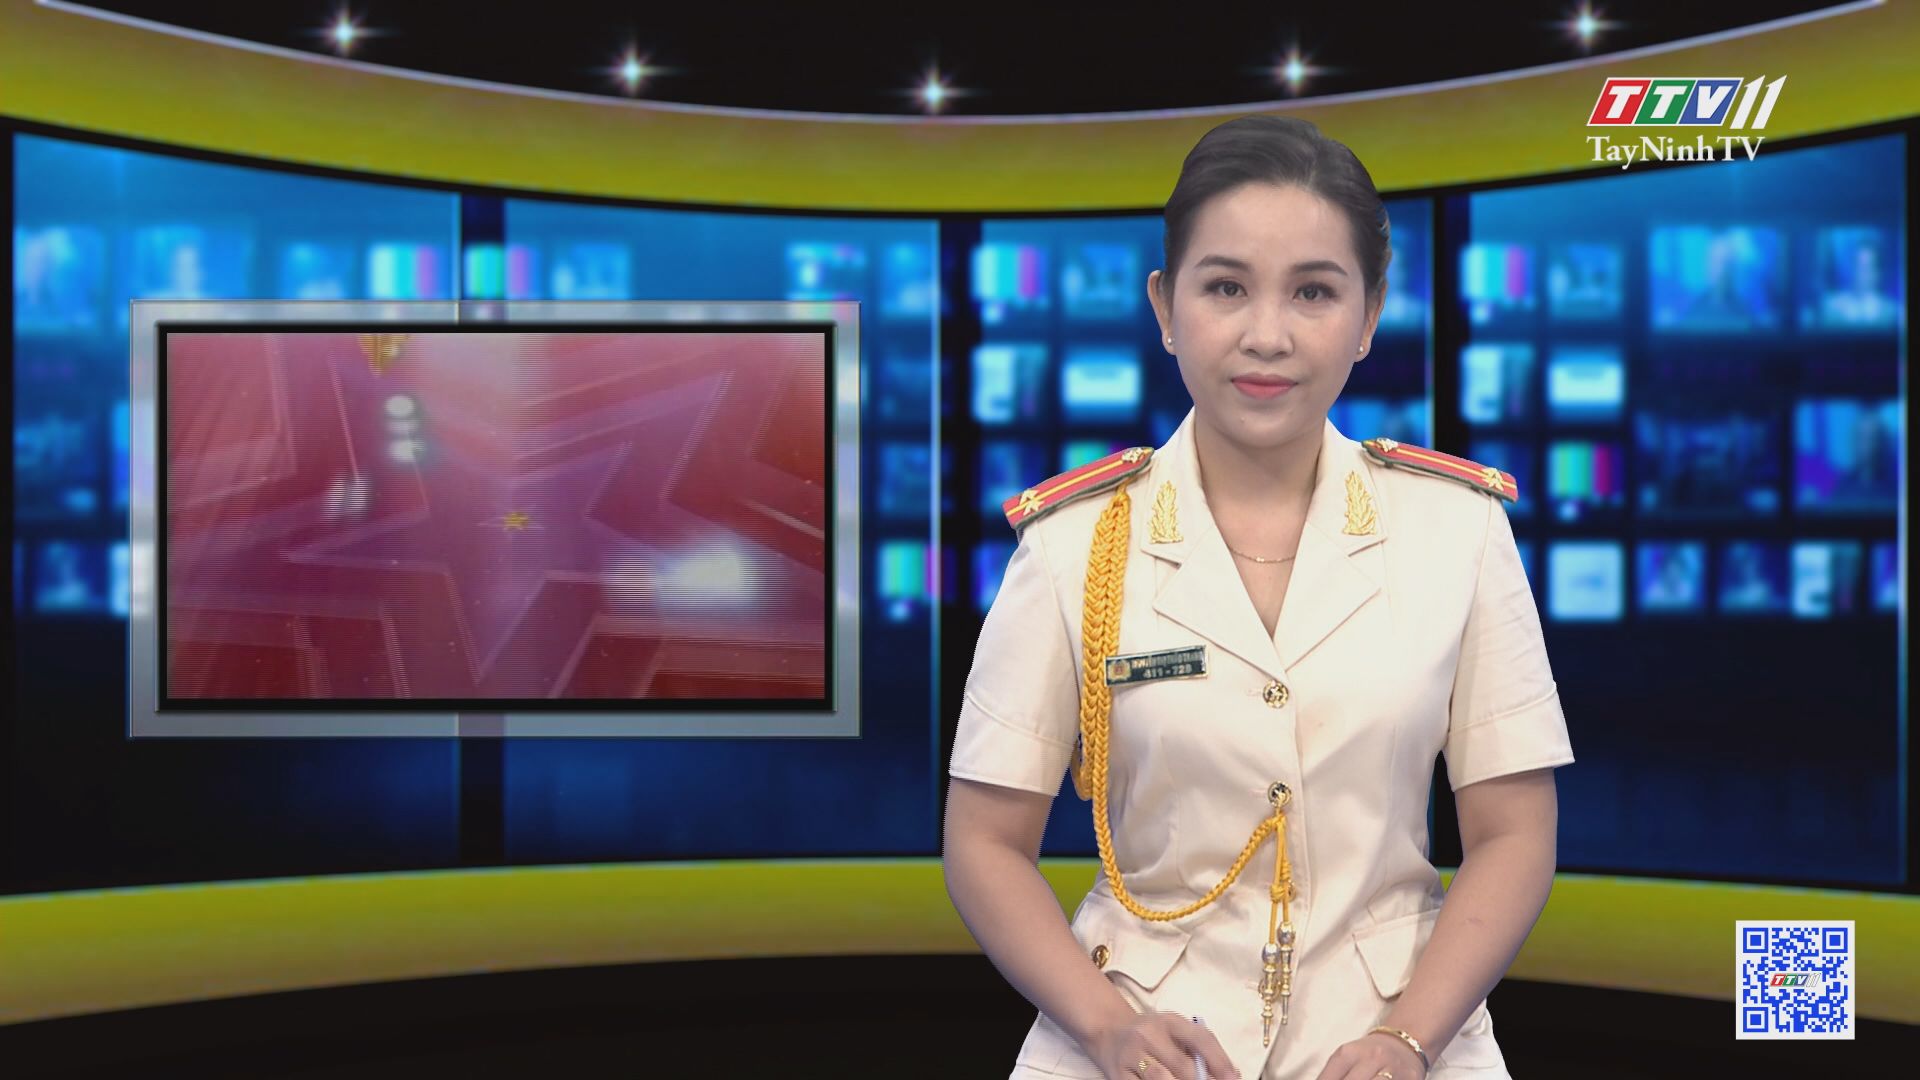 Công an xã Thạnh Tây nỗ lực rà soát danh sách cử tri chính xác | AN NINH TÂY NINH | TayNinhTV